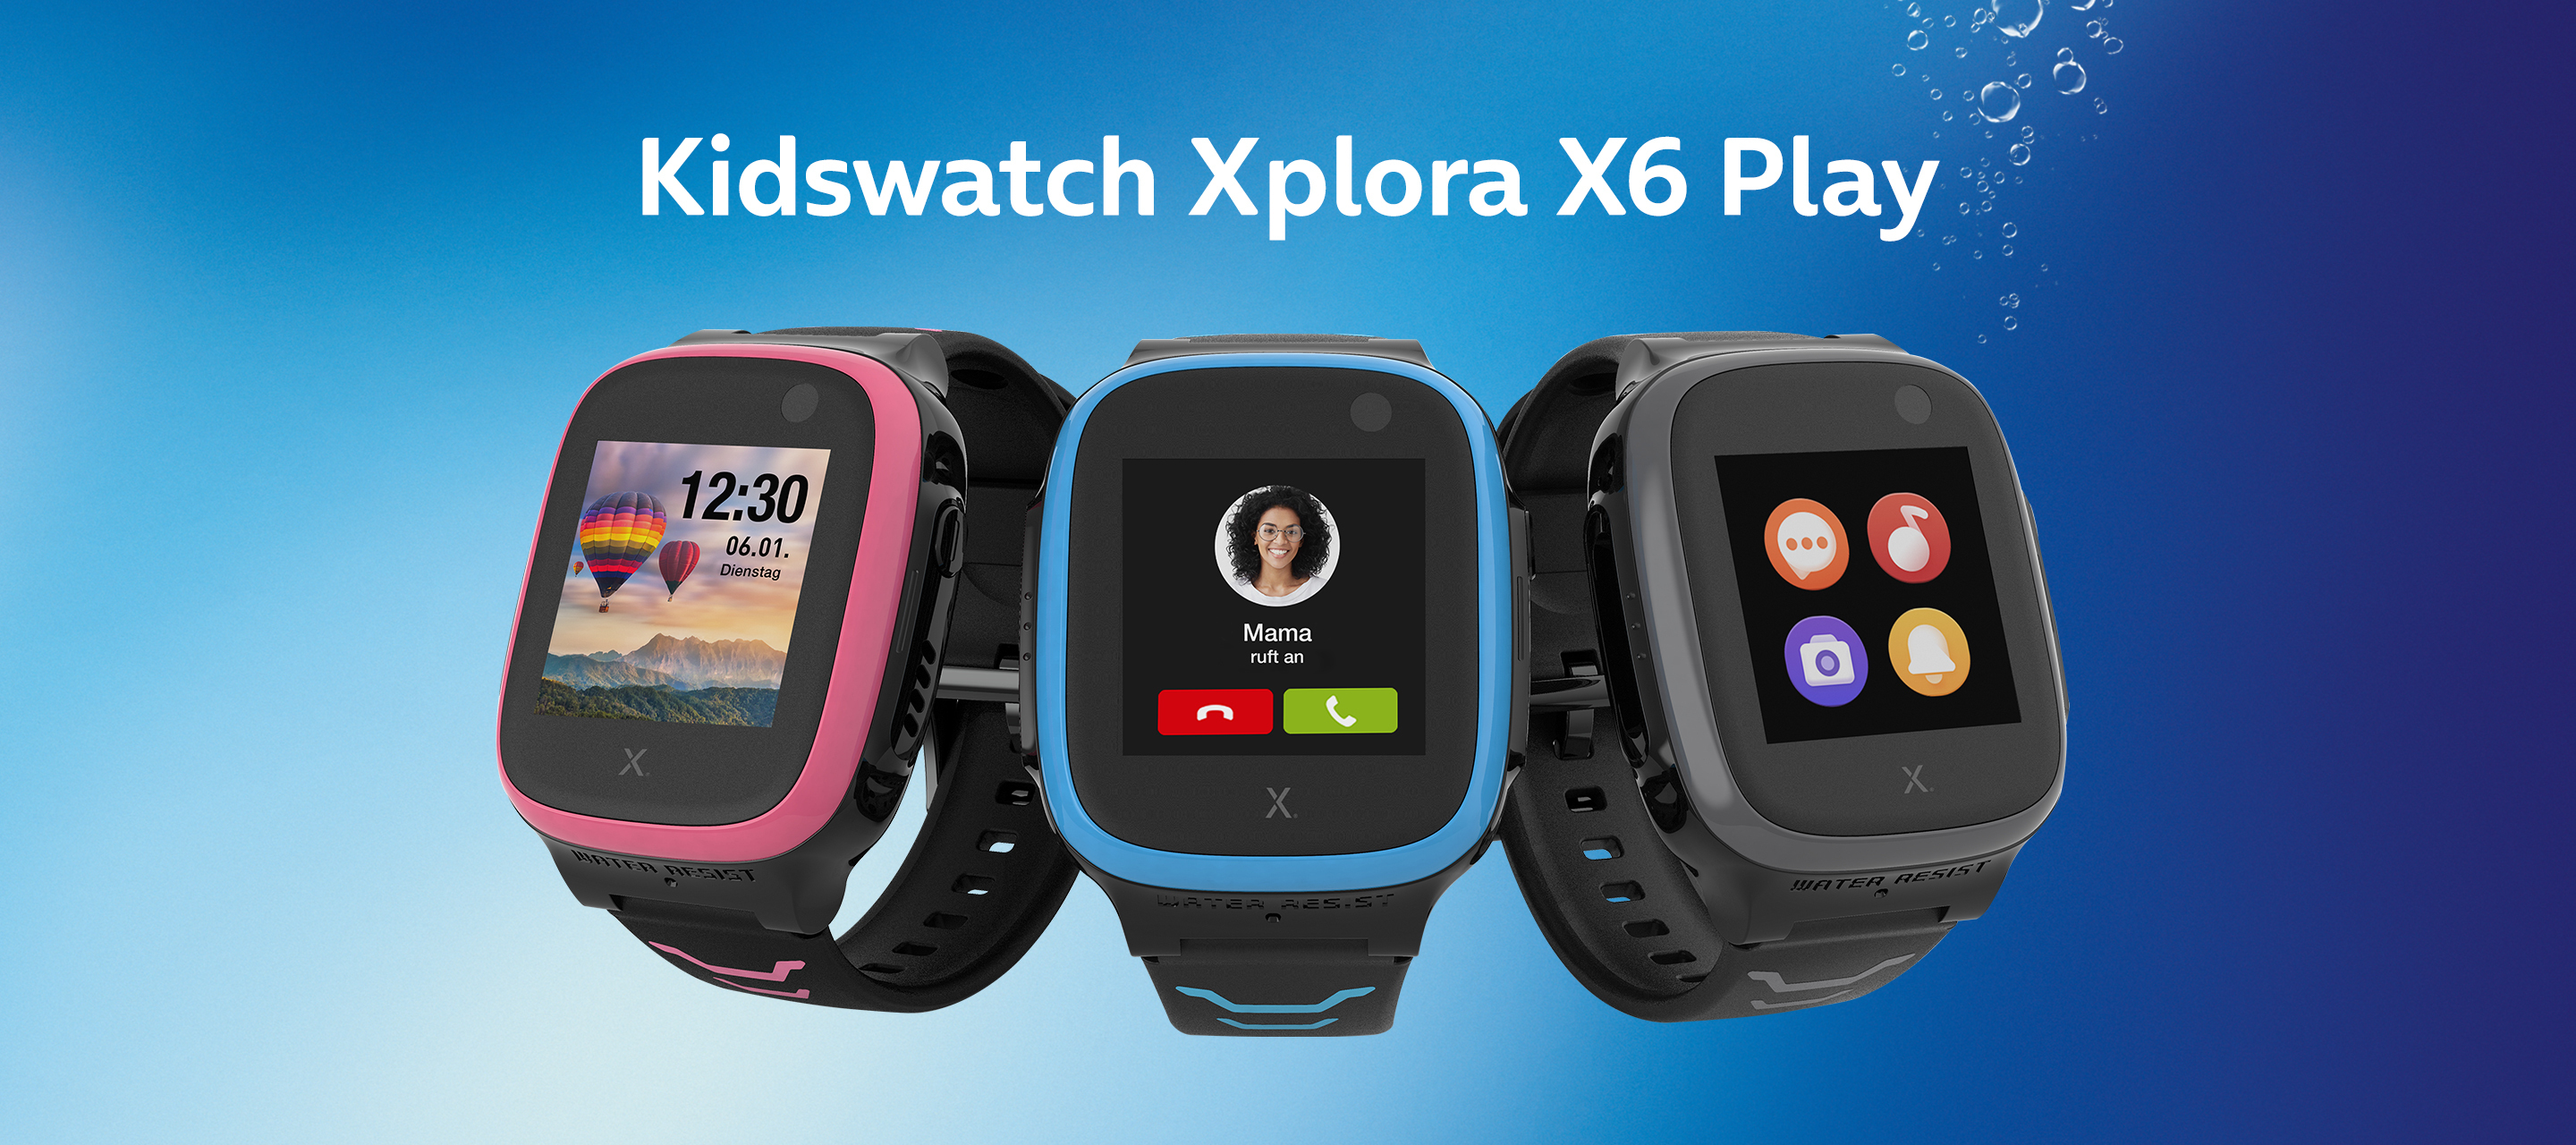 Die Xplora X6 Play Kidswatch - Kindersmartwatch bei O₂